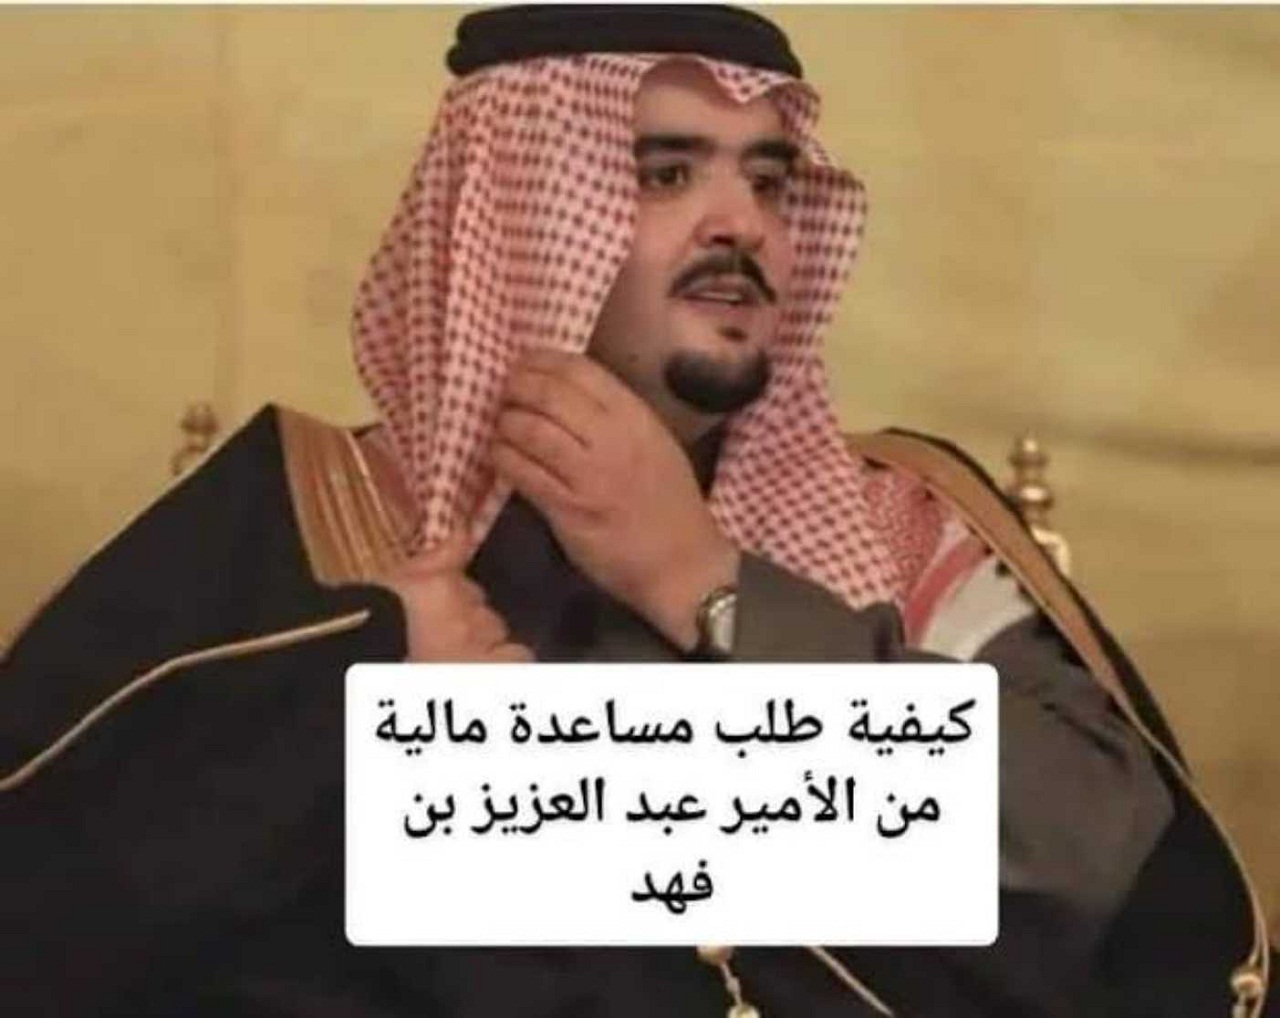 طلب مساعدة مالية وعلاجية من الملك عبدالعزيز بن فهد 2022